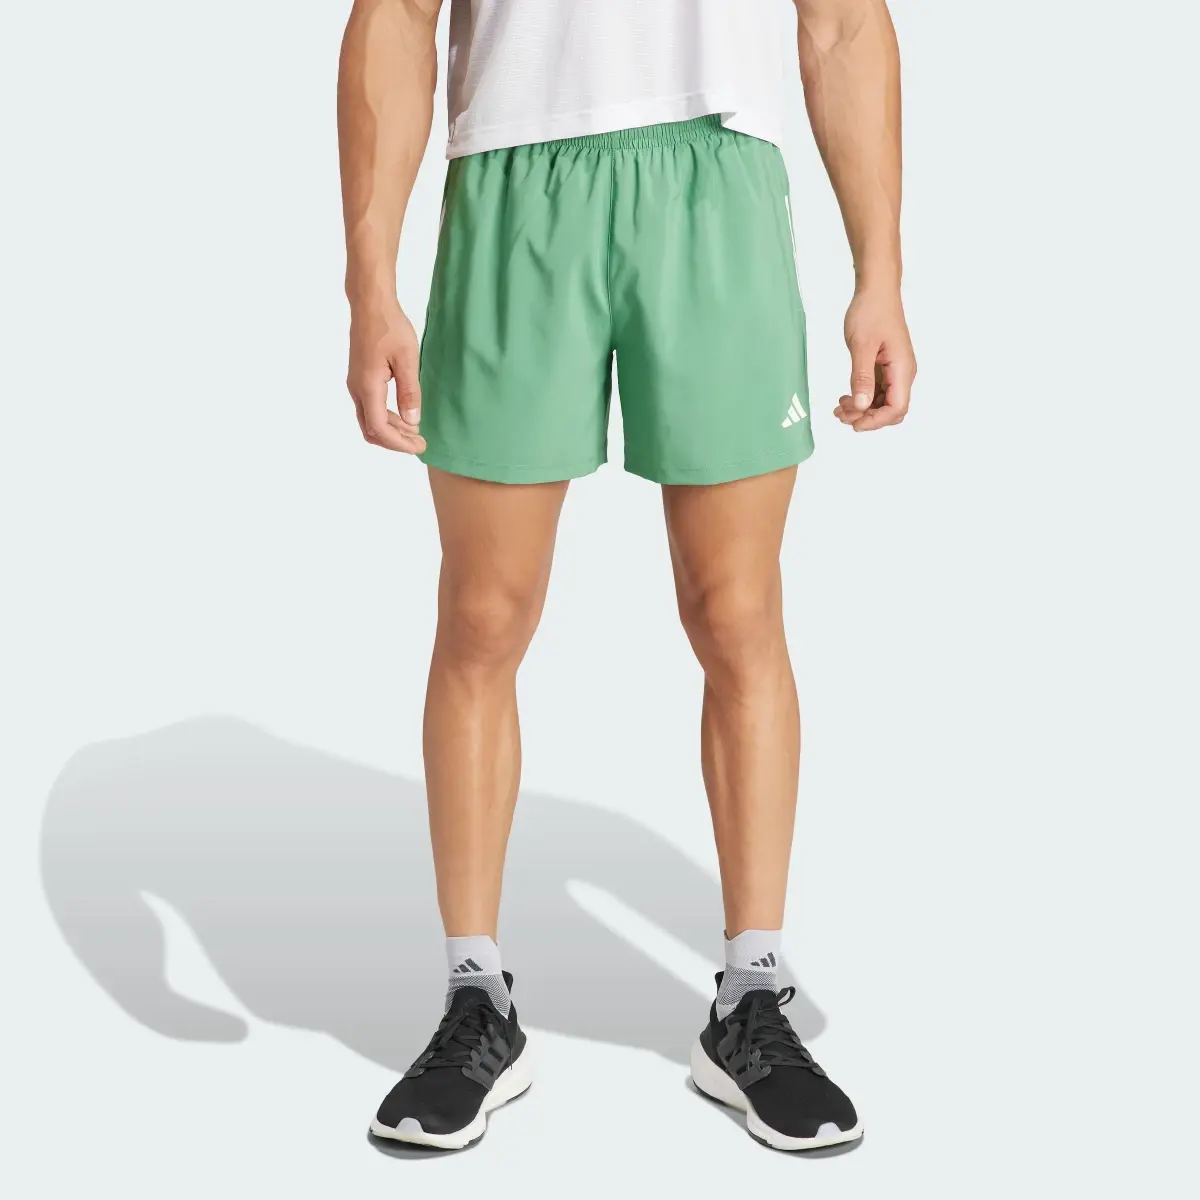 Adidas Own The Run Shorts. 1